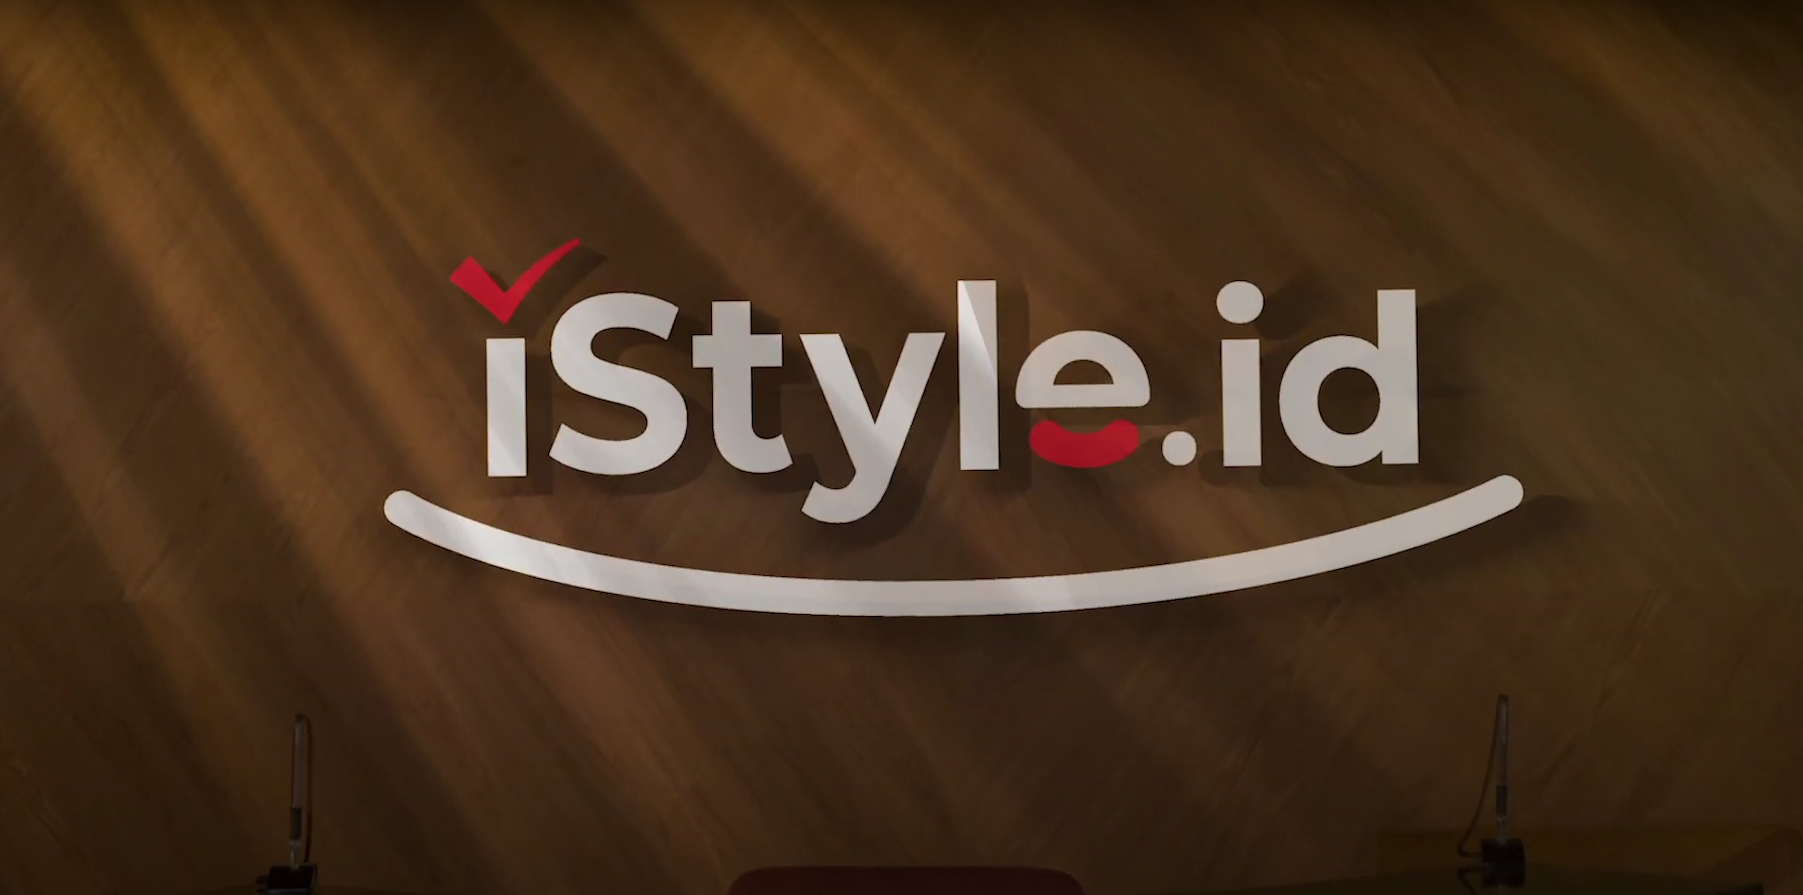 iLOTTE, situs e-commerce besutan Salim Group dan Lotte Group, mengumumkan rebrand menjadi iStyle memasuki tahun ketiganya